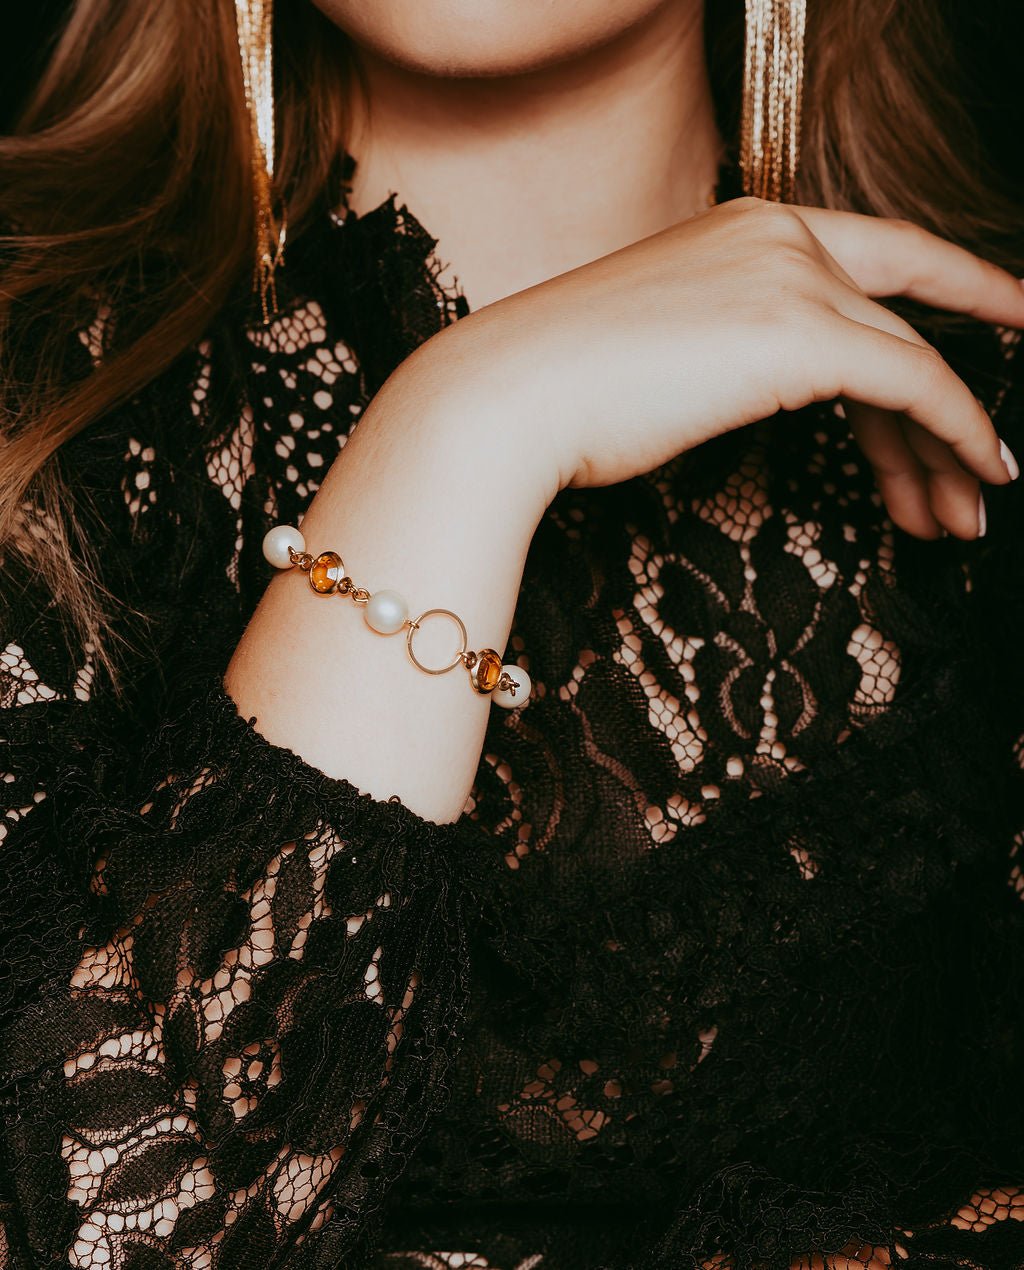 Crystal earrings and bracelet - Natalia Willmott